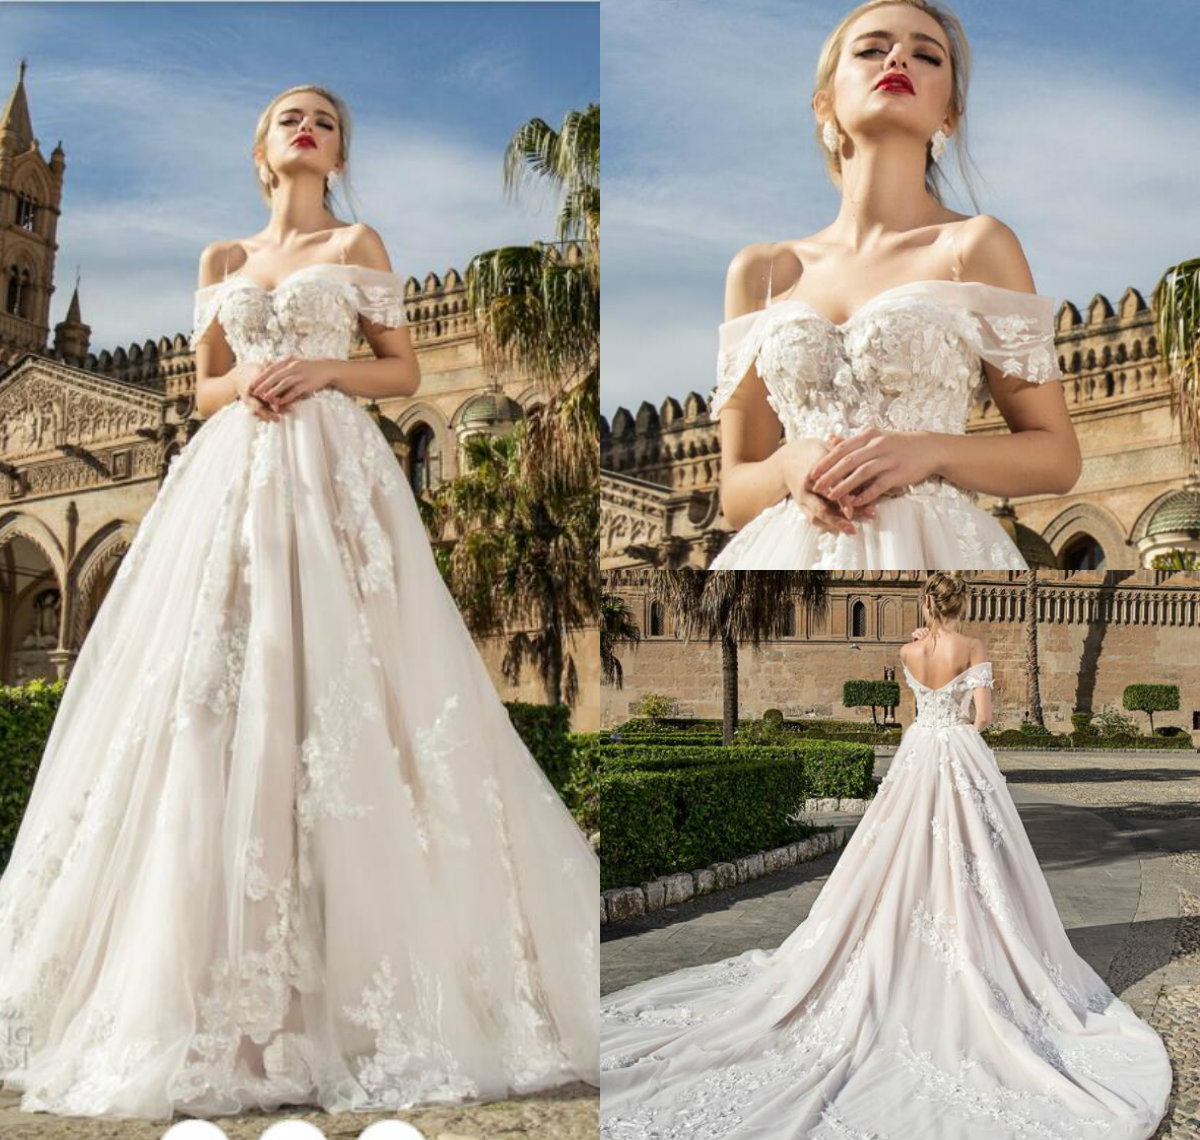 

Off Shoulder Backless Bohemian Wedding Dresses Sweep Train Tulle 3D Floral Applique A Line Beach Bridal Dress Vestido De Novia Plus size, Same as image